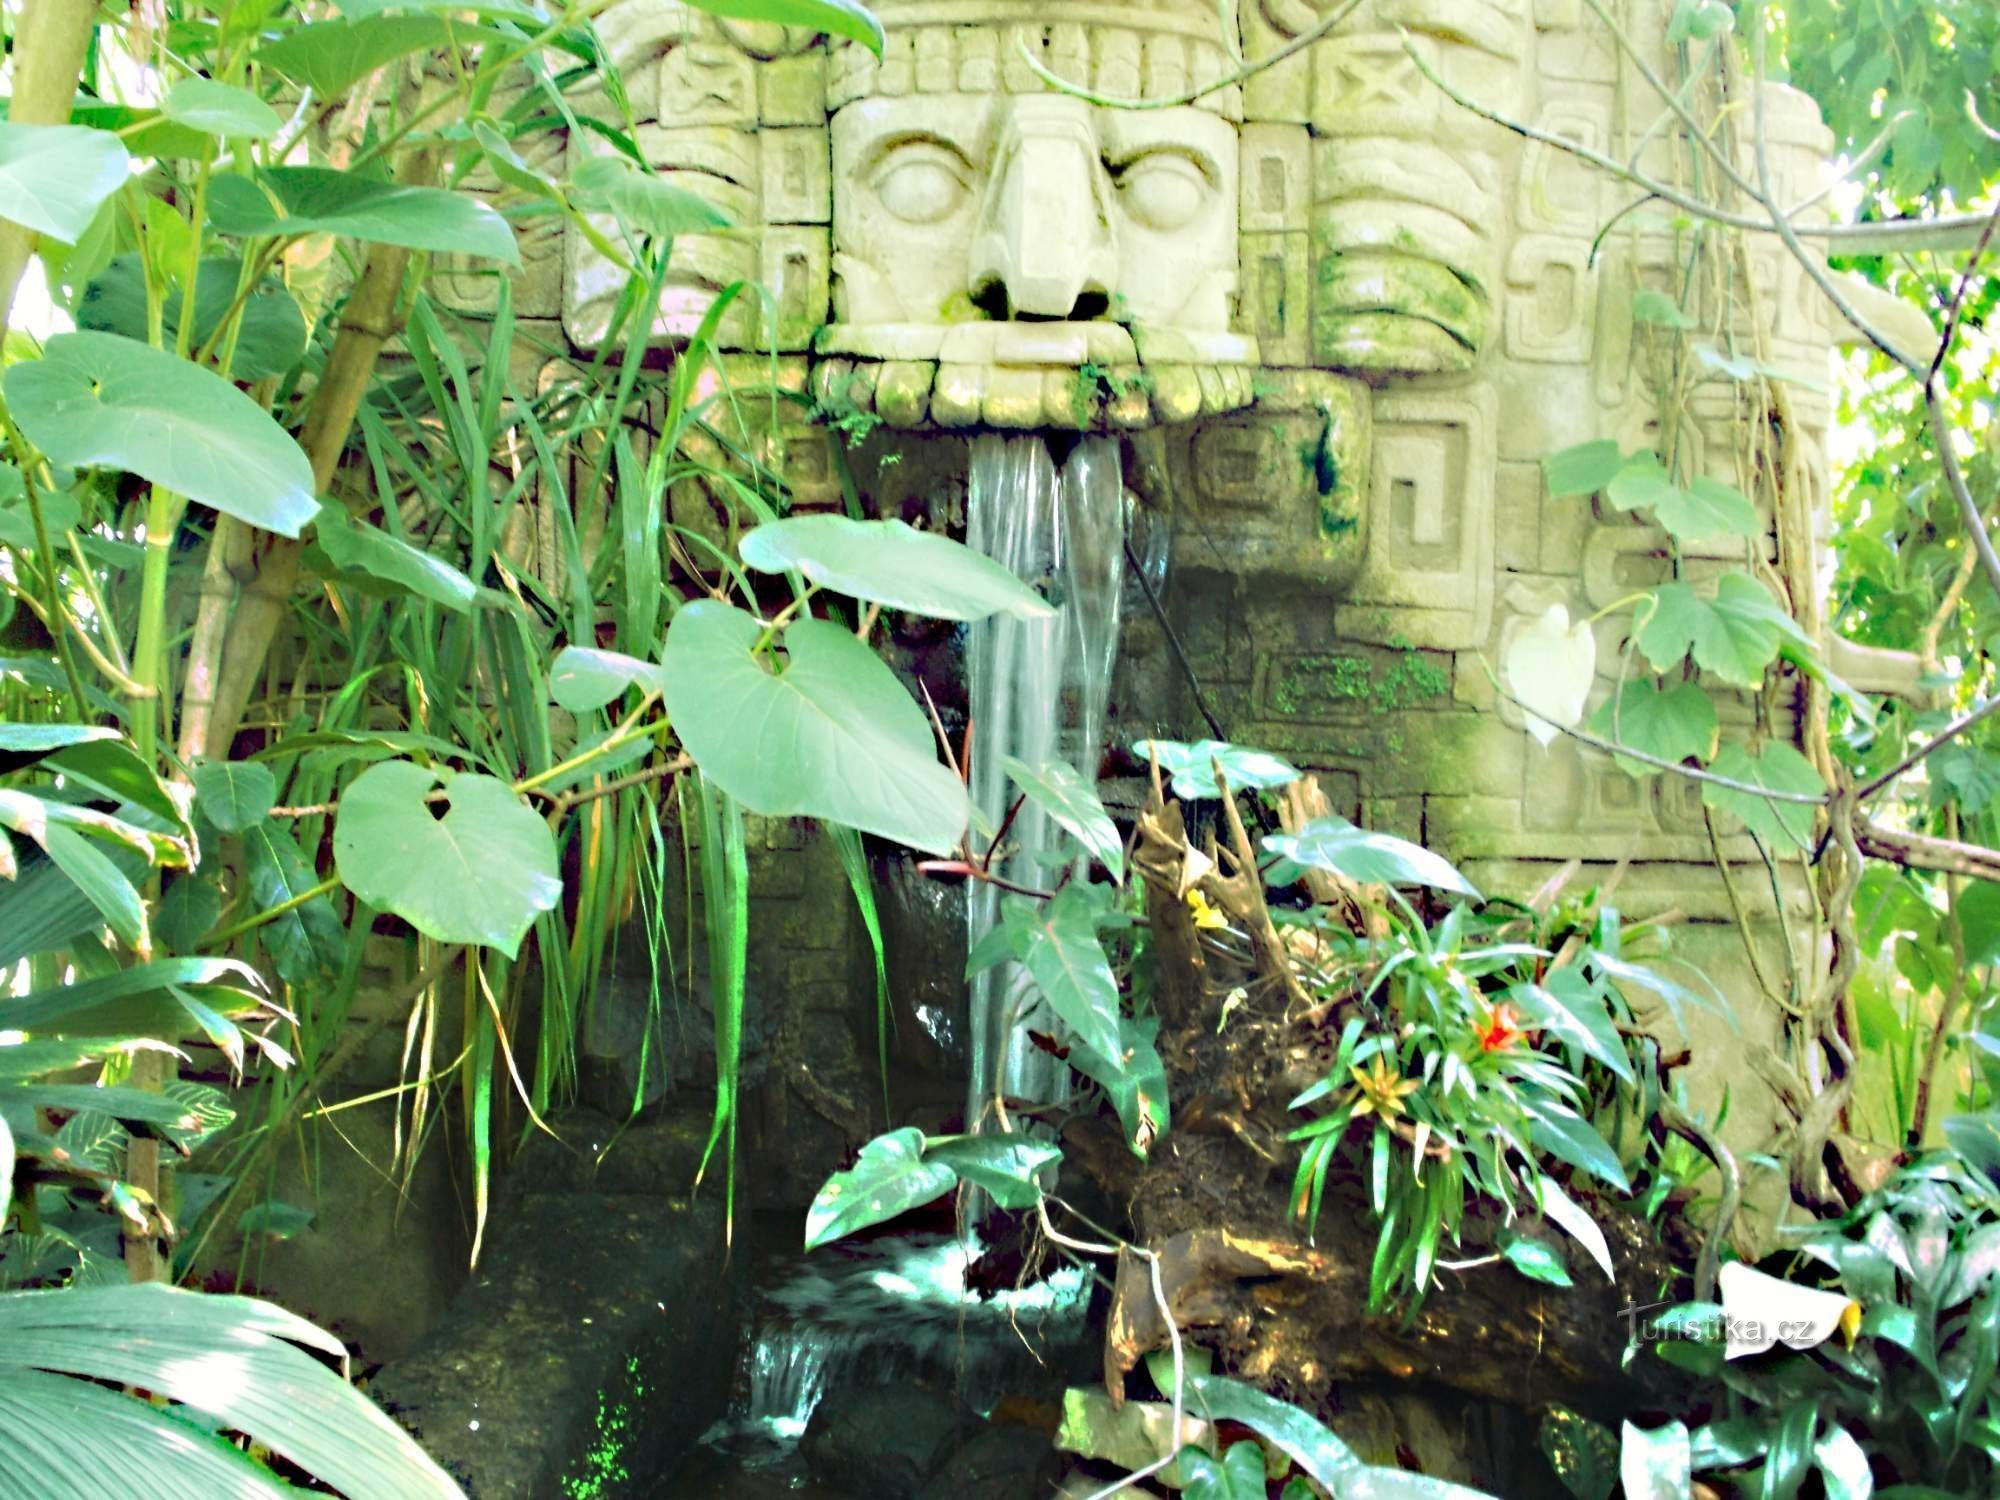 位于兹林附近 Lešná 的 Yucatán 大厅展馆中的热带森林